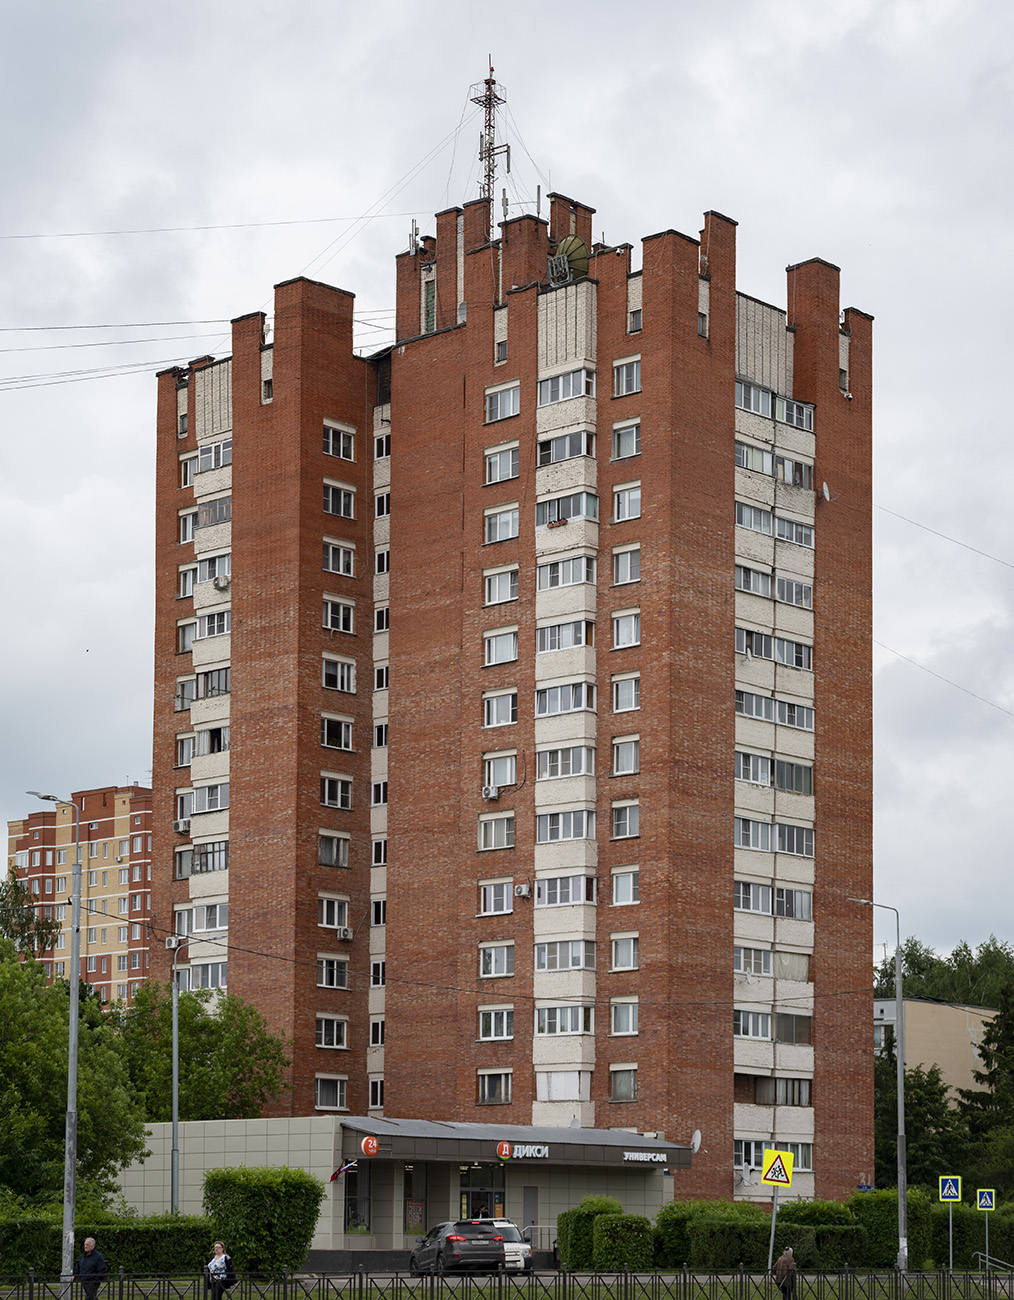 Settlement Voronovskoe, пос. ЛМС, микрорайон Центральный, 31